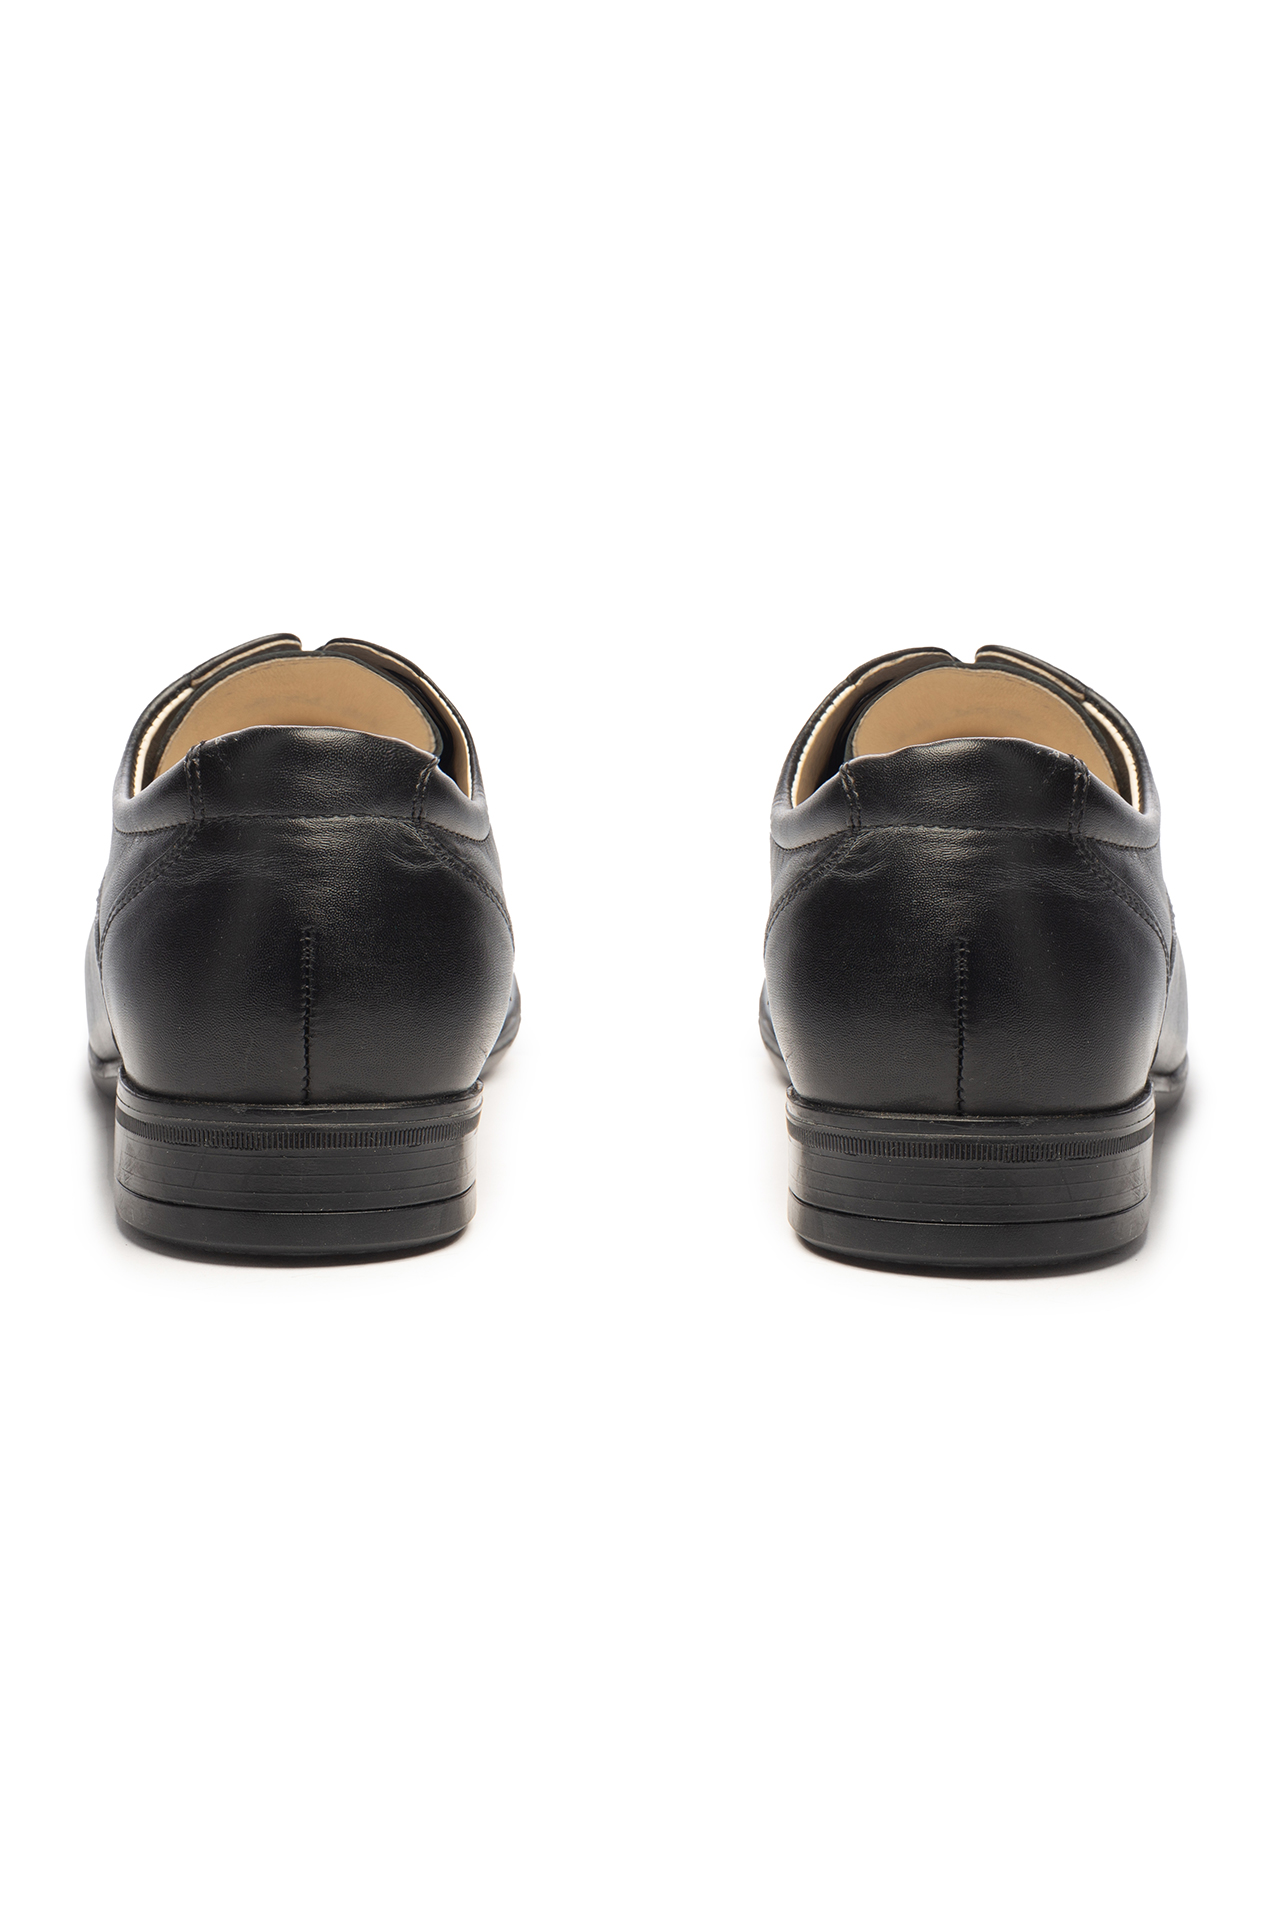 Туфли БУТЕКС классические мужские мод 5359 черные